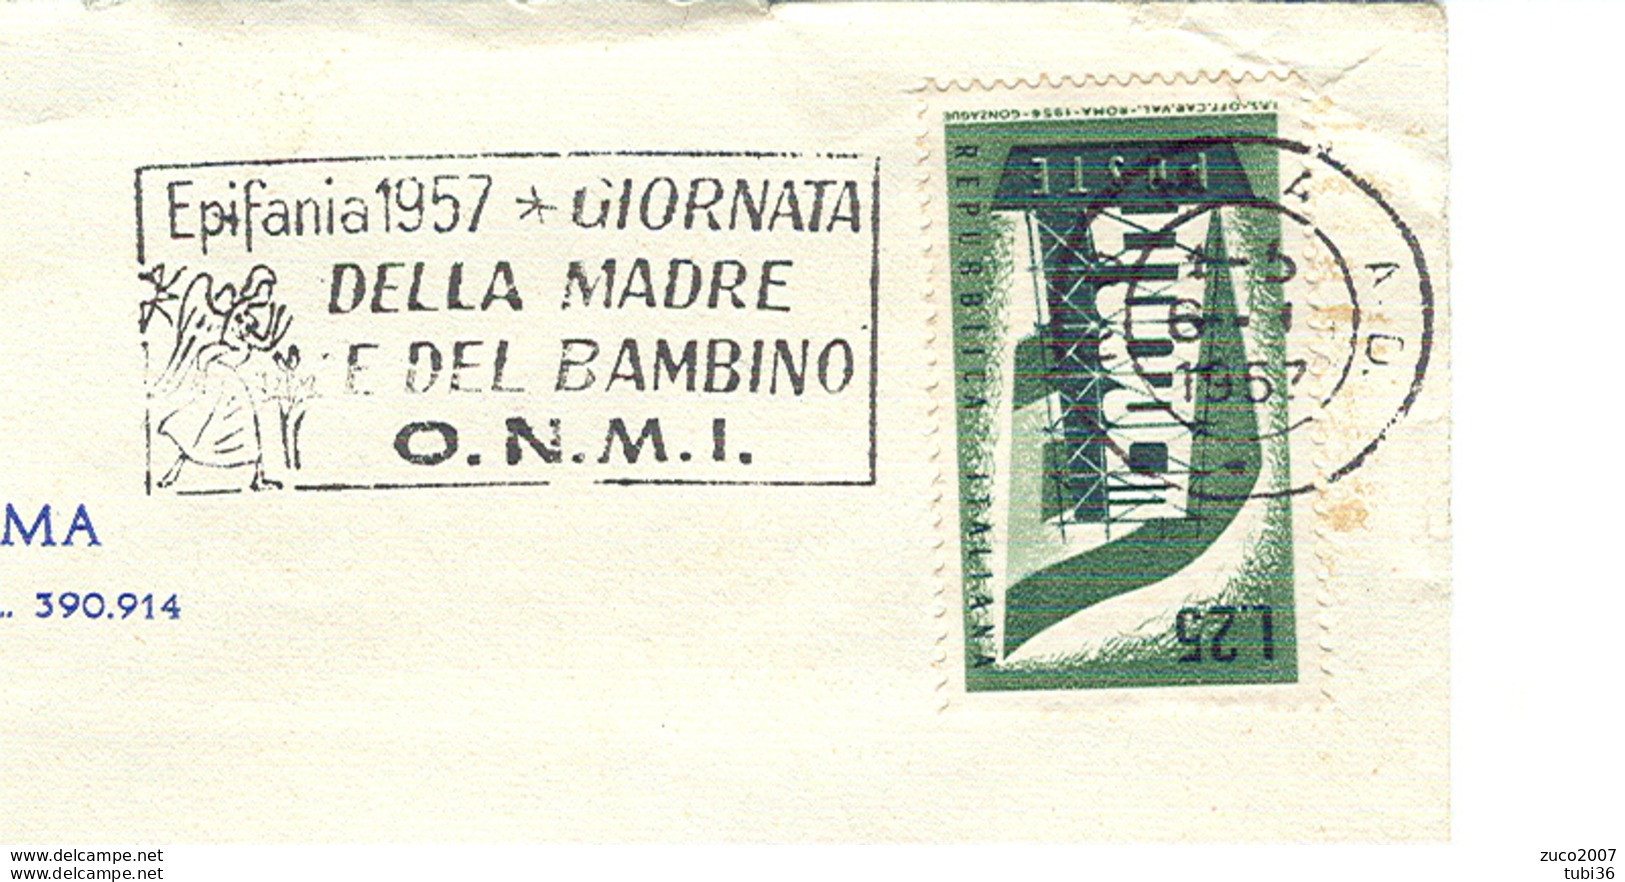 EPIFANIA 1957, GIORNATA DELLA MADRE E DEL BAMBINO- O.N.M.I.- TIMBRO POSTE ROMA TARGHETTA,1957,CIRCOLO CANOTTIERI,ROMA, - Fête Des Mères